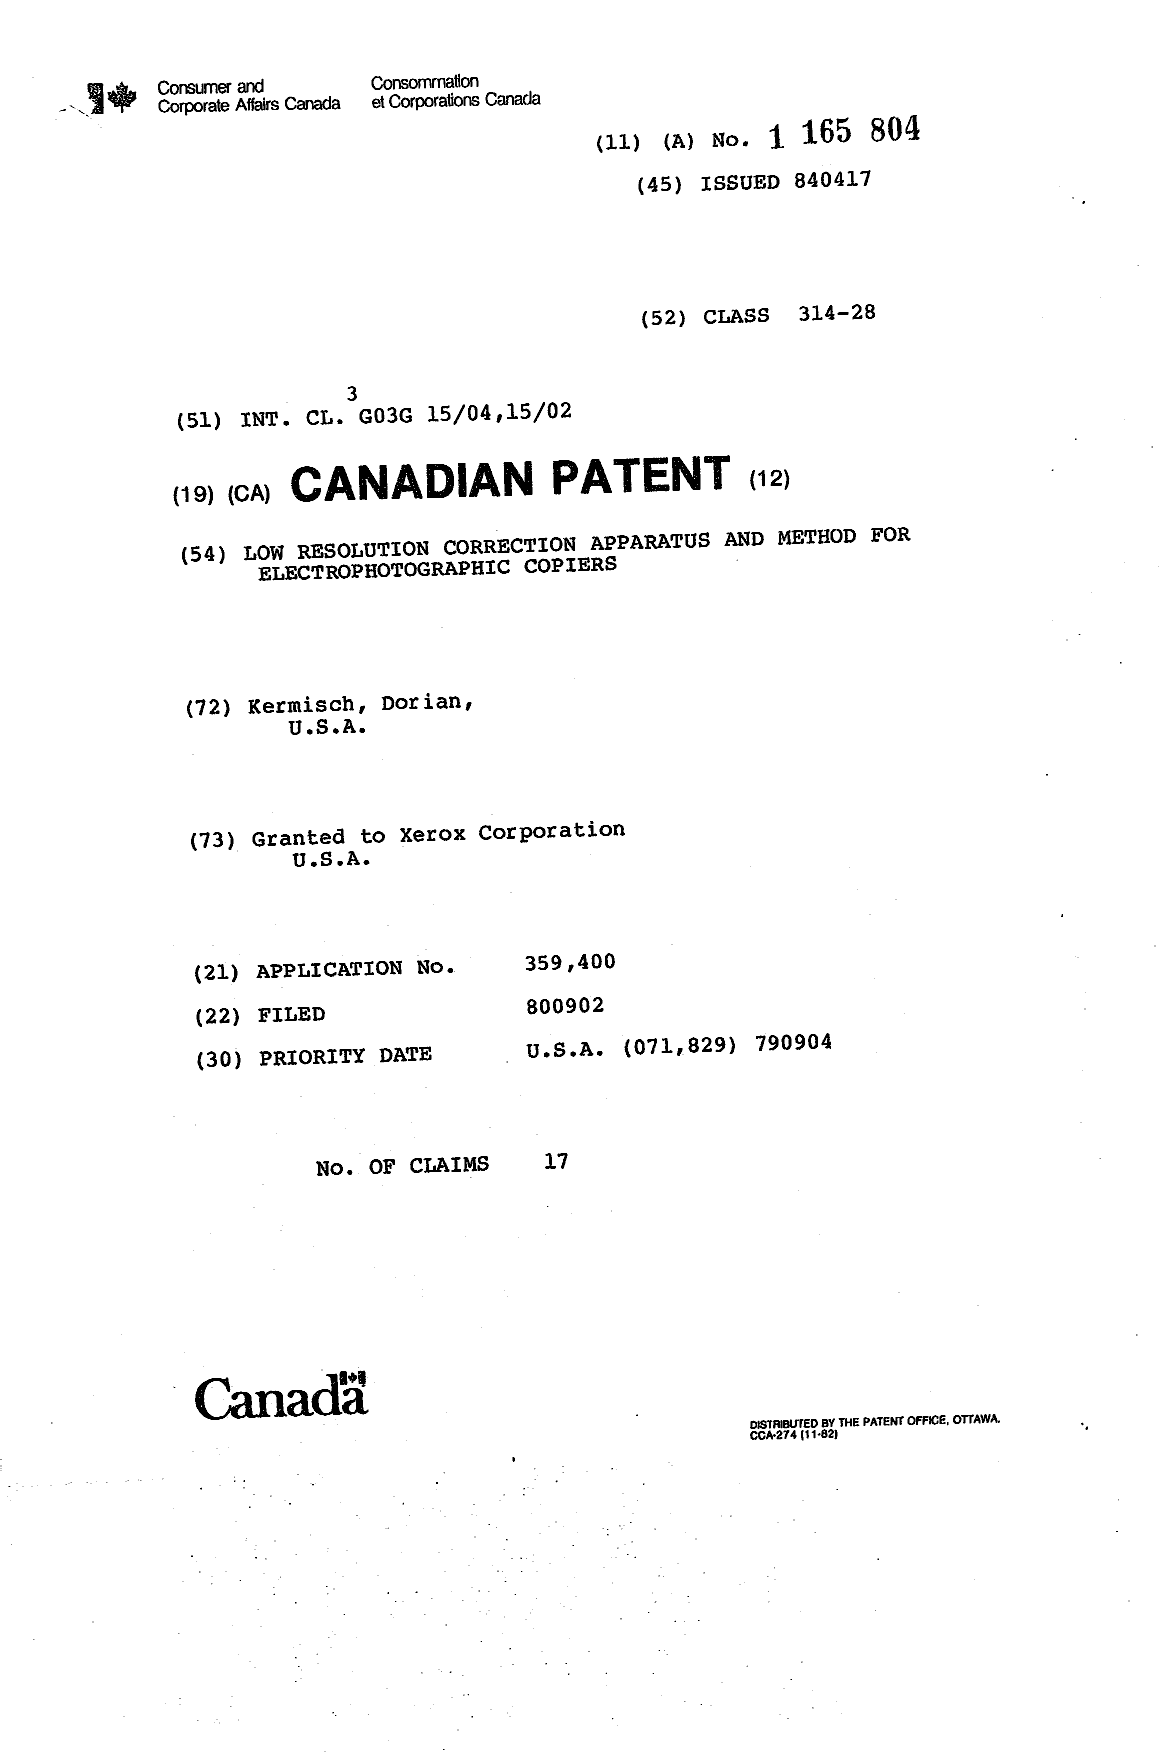 Document de brevet canadien 1165804. Page couverture 19931202. Image 1 de 1